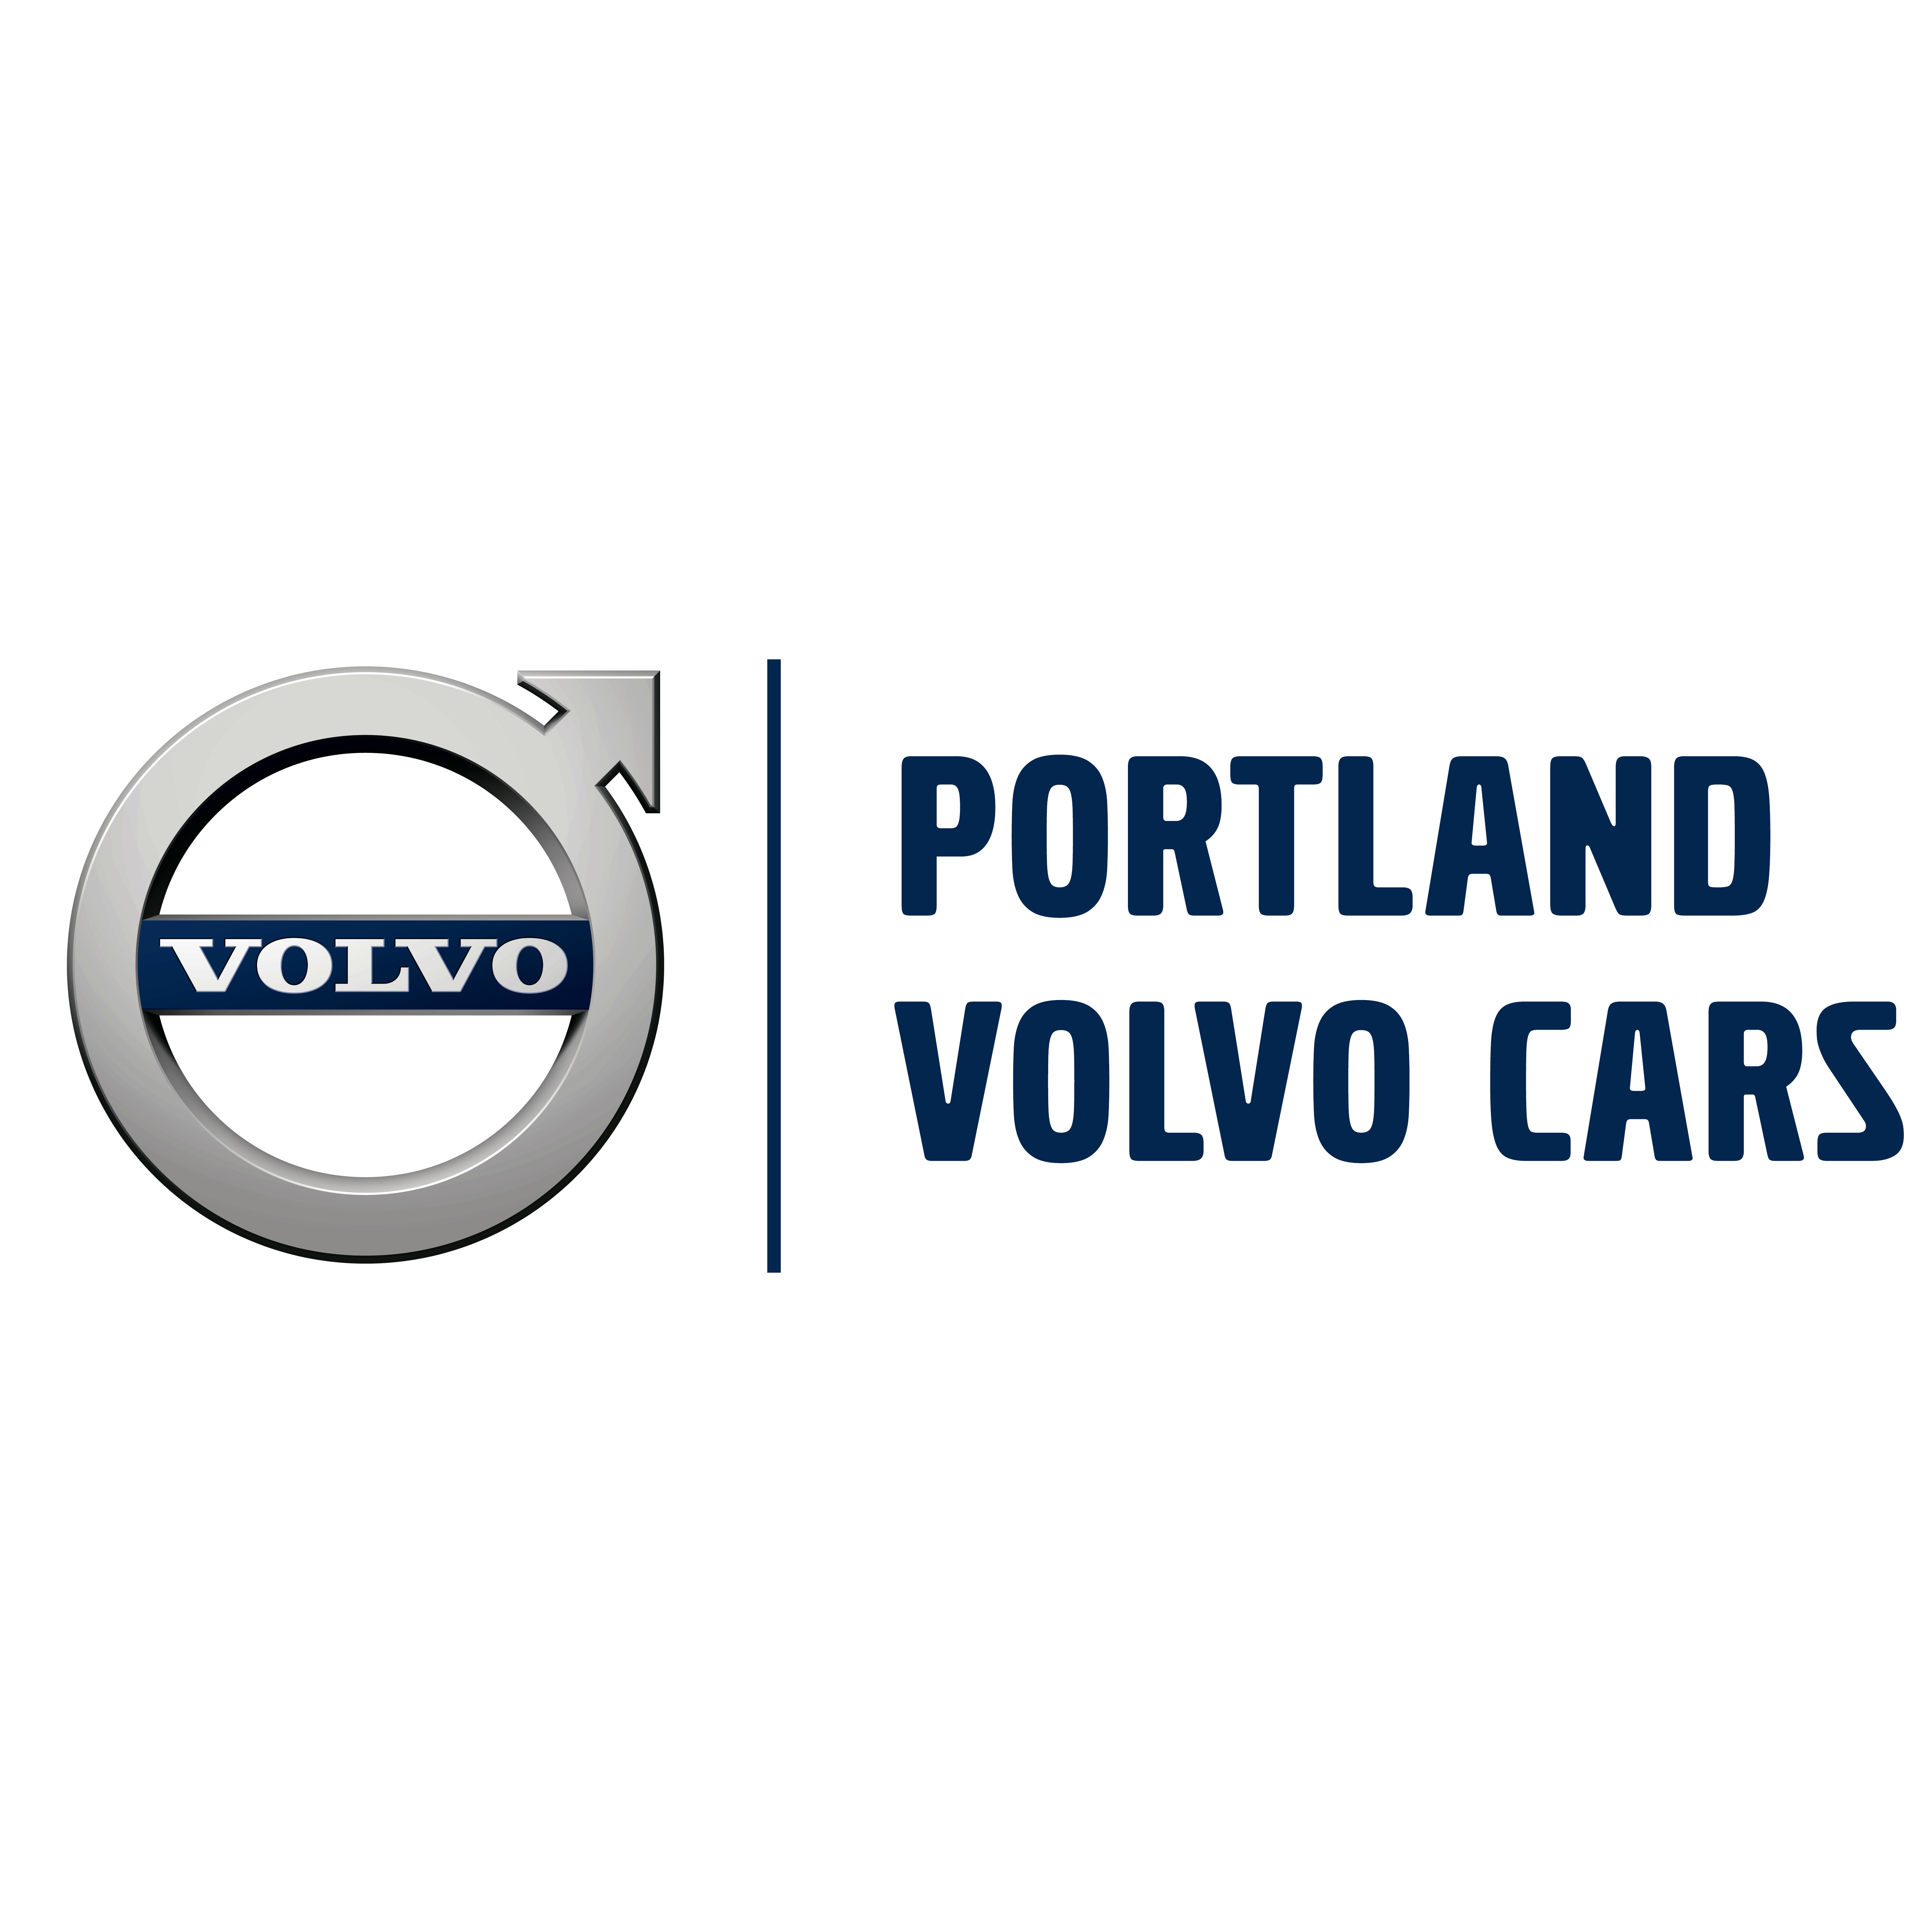 Portland Volvo Cars - Scarborough, ME 04074 - (207)883-5568 | ShowMeLocal.com